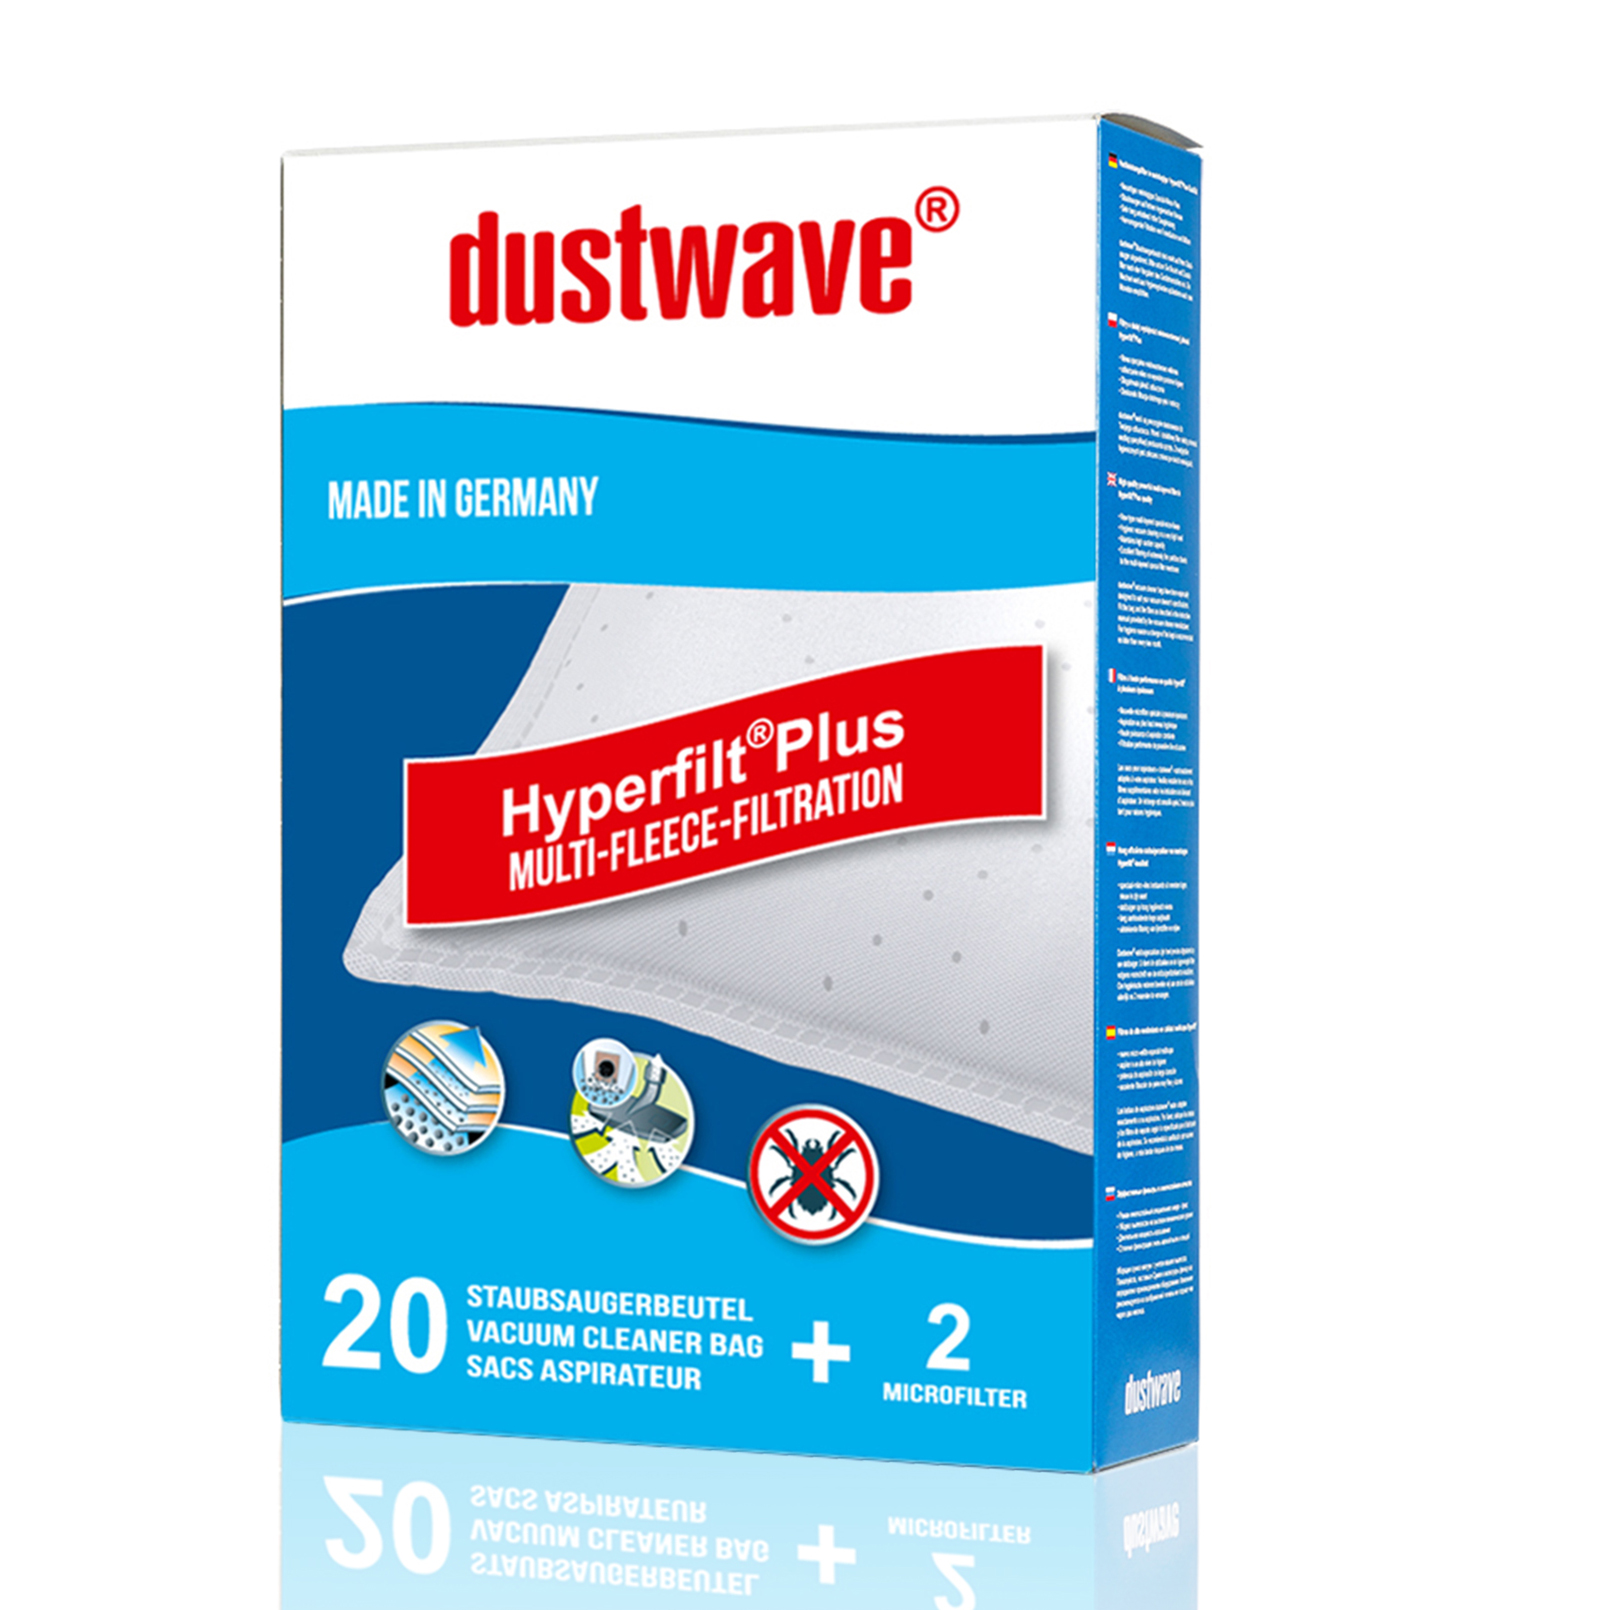 Dustwave® 5 Staubsaugerbeutel für Miele S5981 / S 5981 - hocheffizient, mehrlagiges Mikrovlies mit Hygieneverschluss - Made in Germany